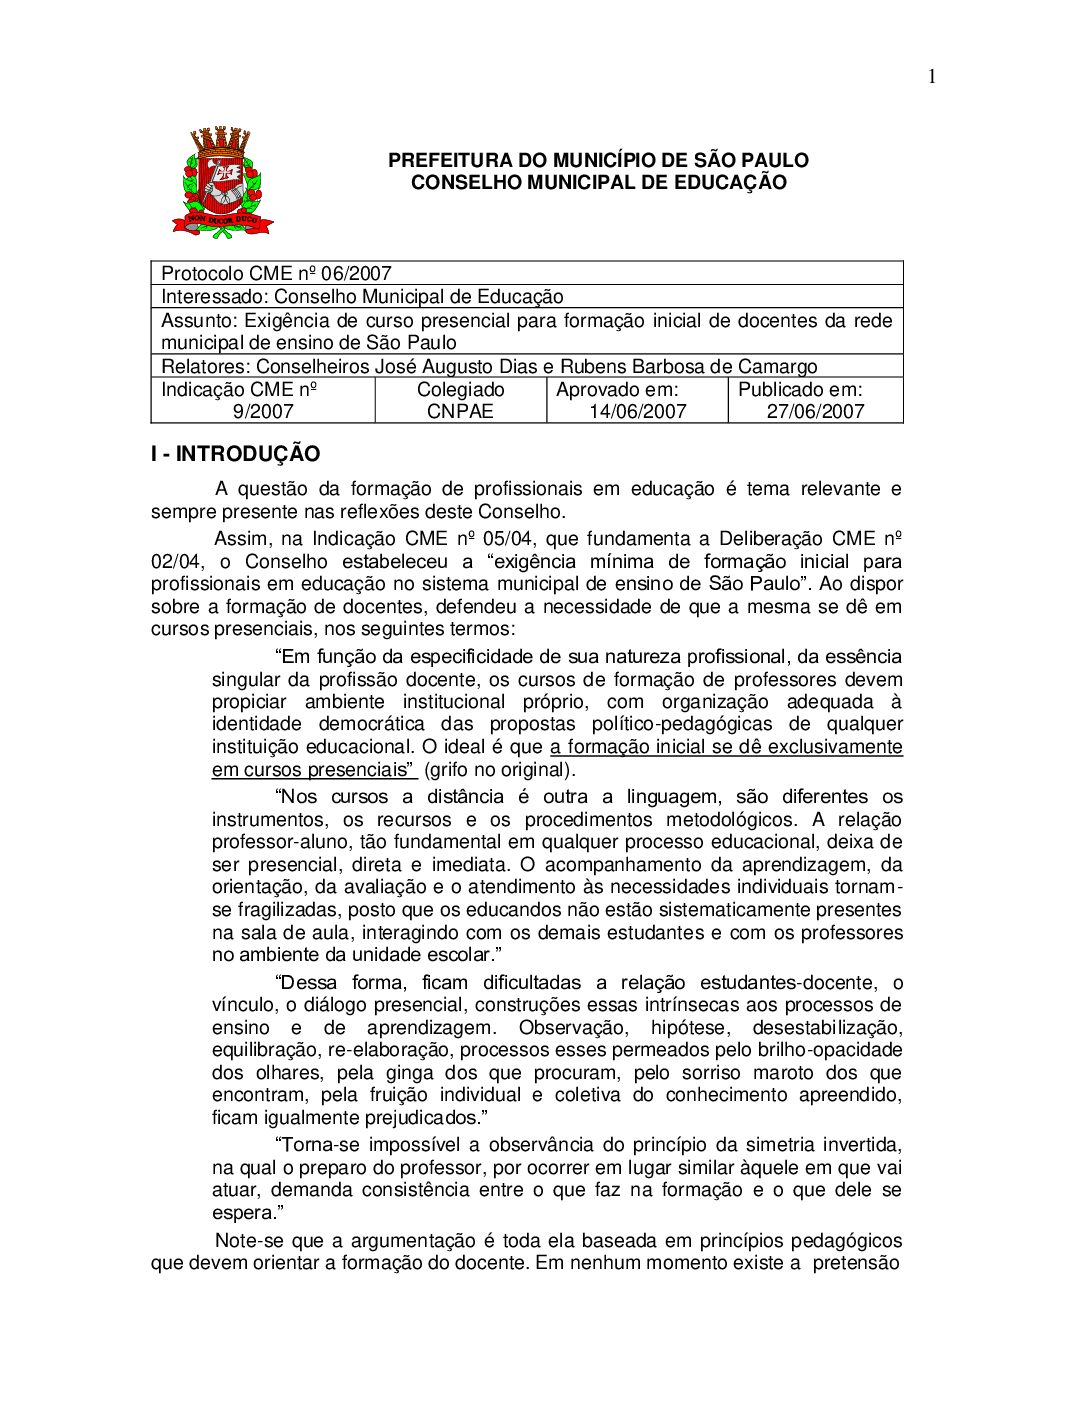 Indicação CME nº 09/2007 - Exigência de curso presencial para formação inicial de docentes da rede municipal de ensino de São Paulo